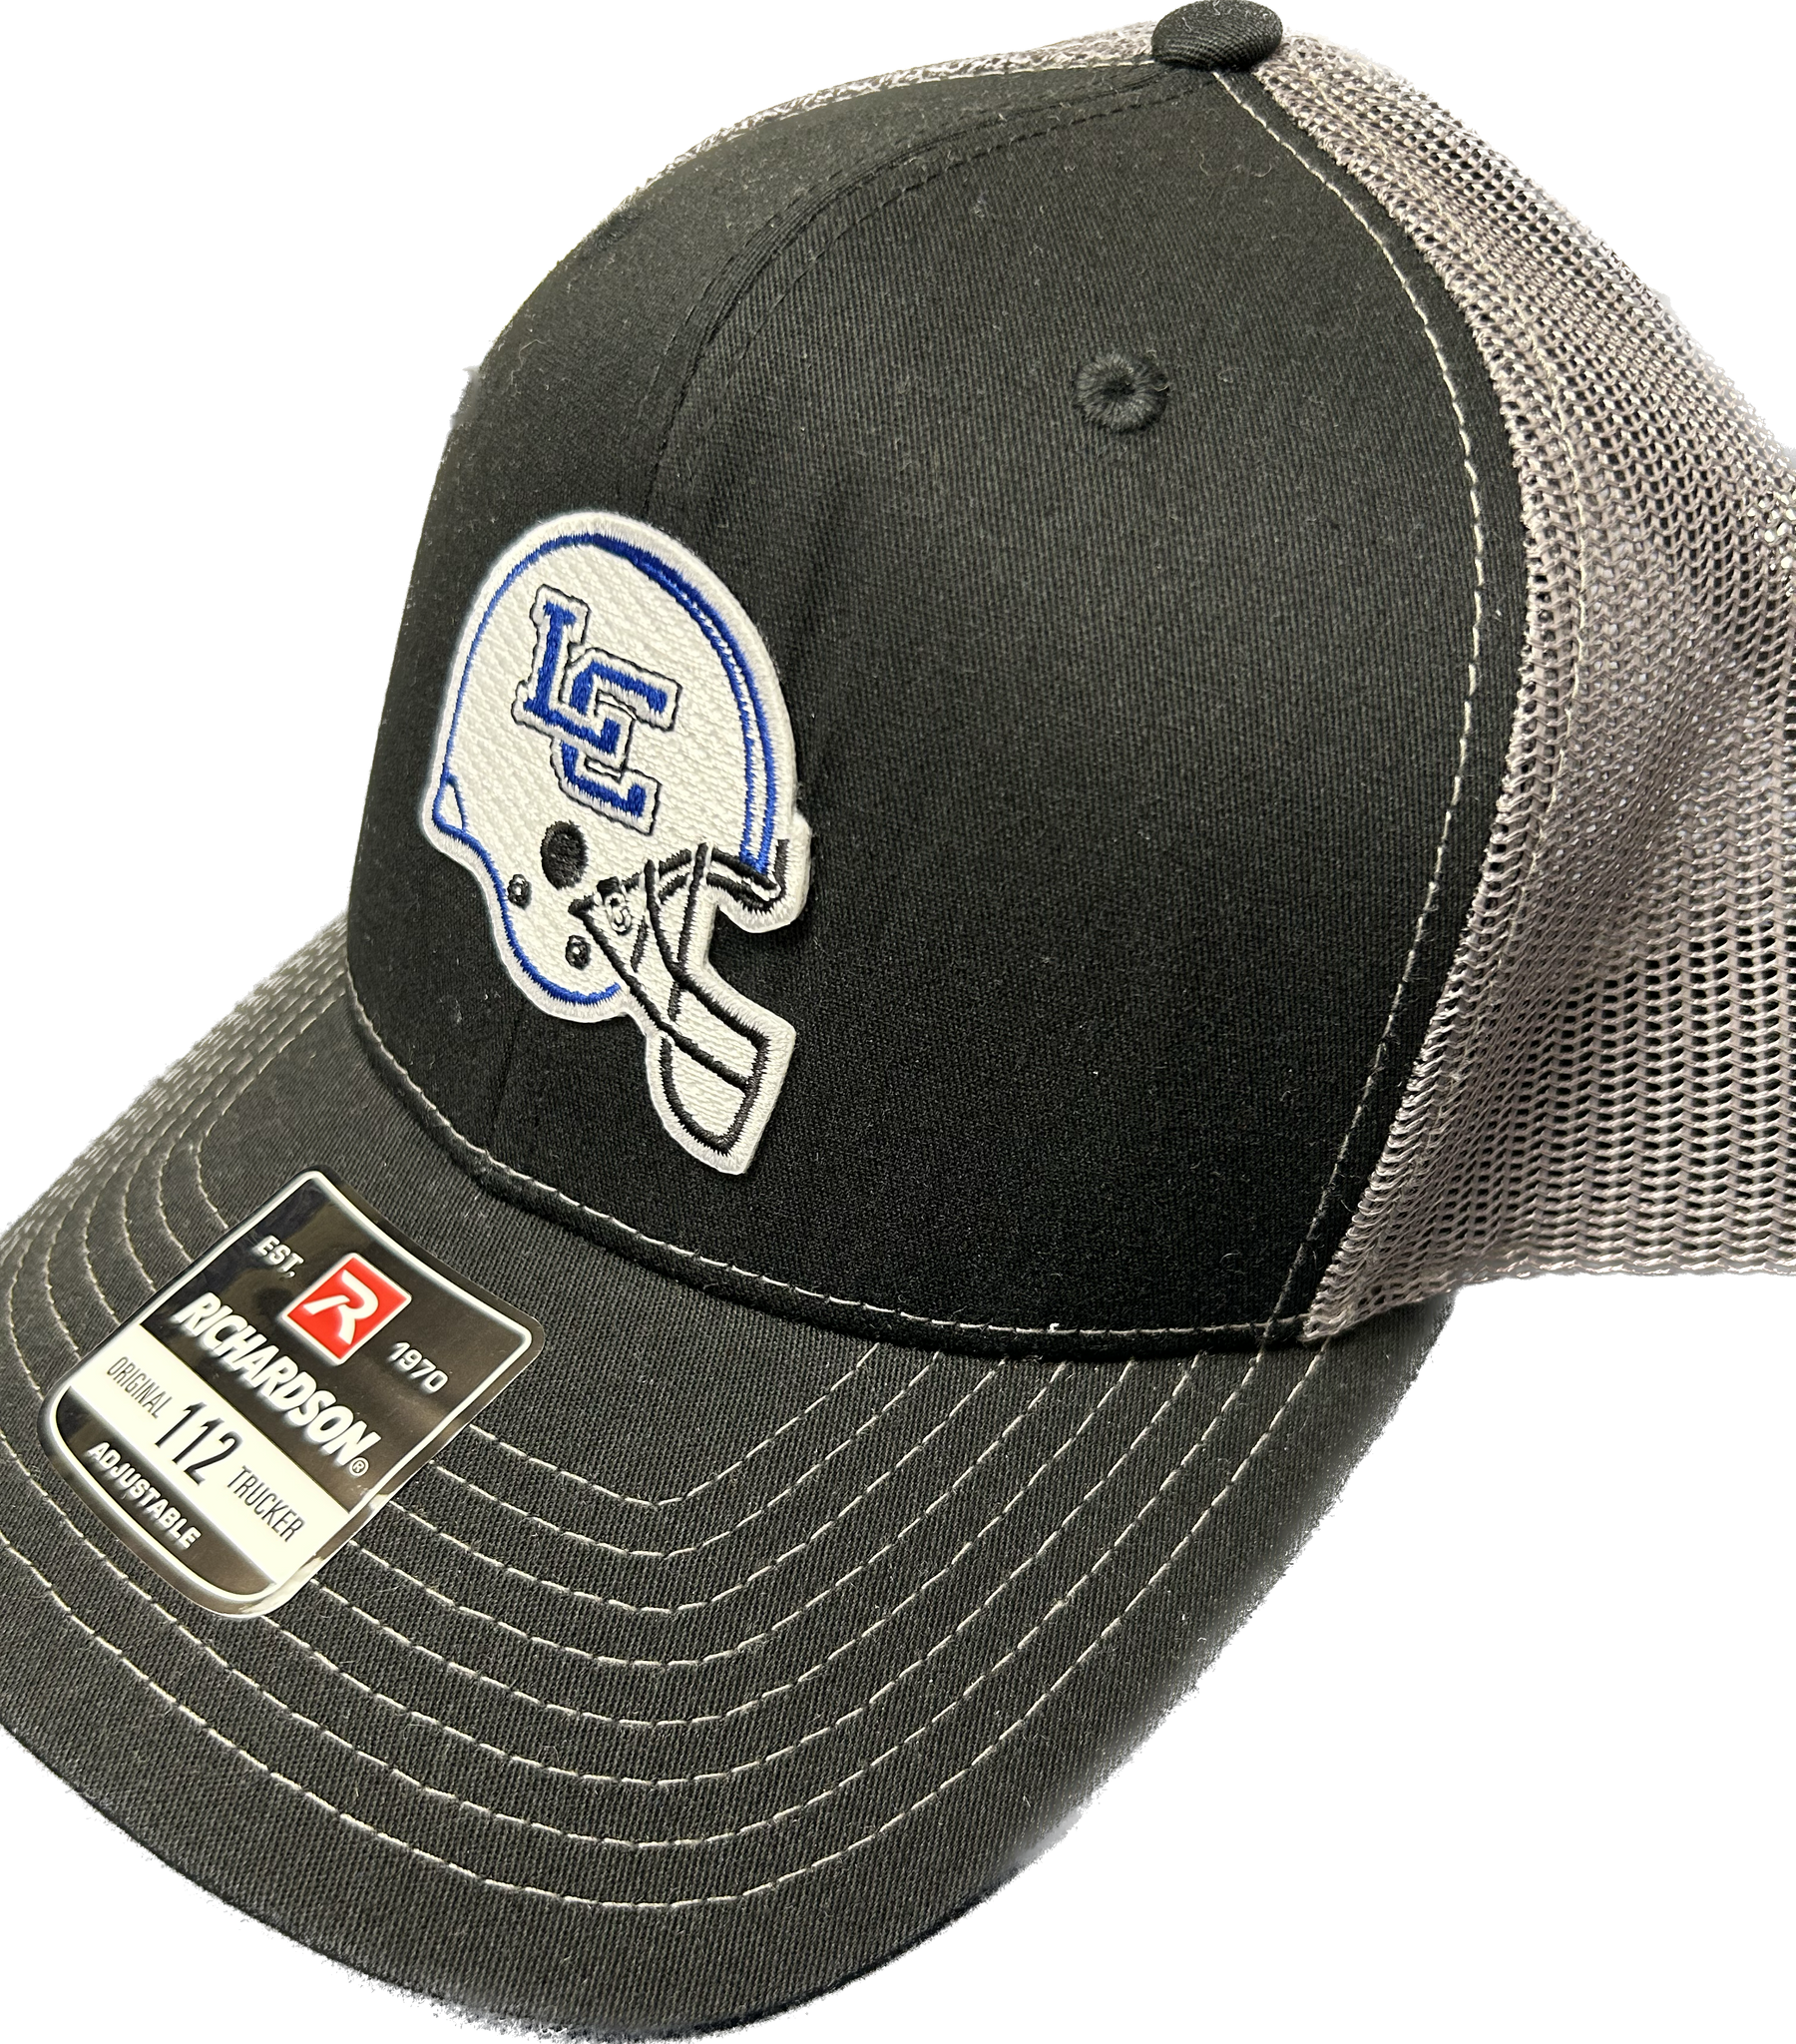 Richardson Hat Football Helmet gray mesh back